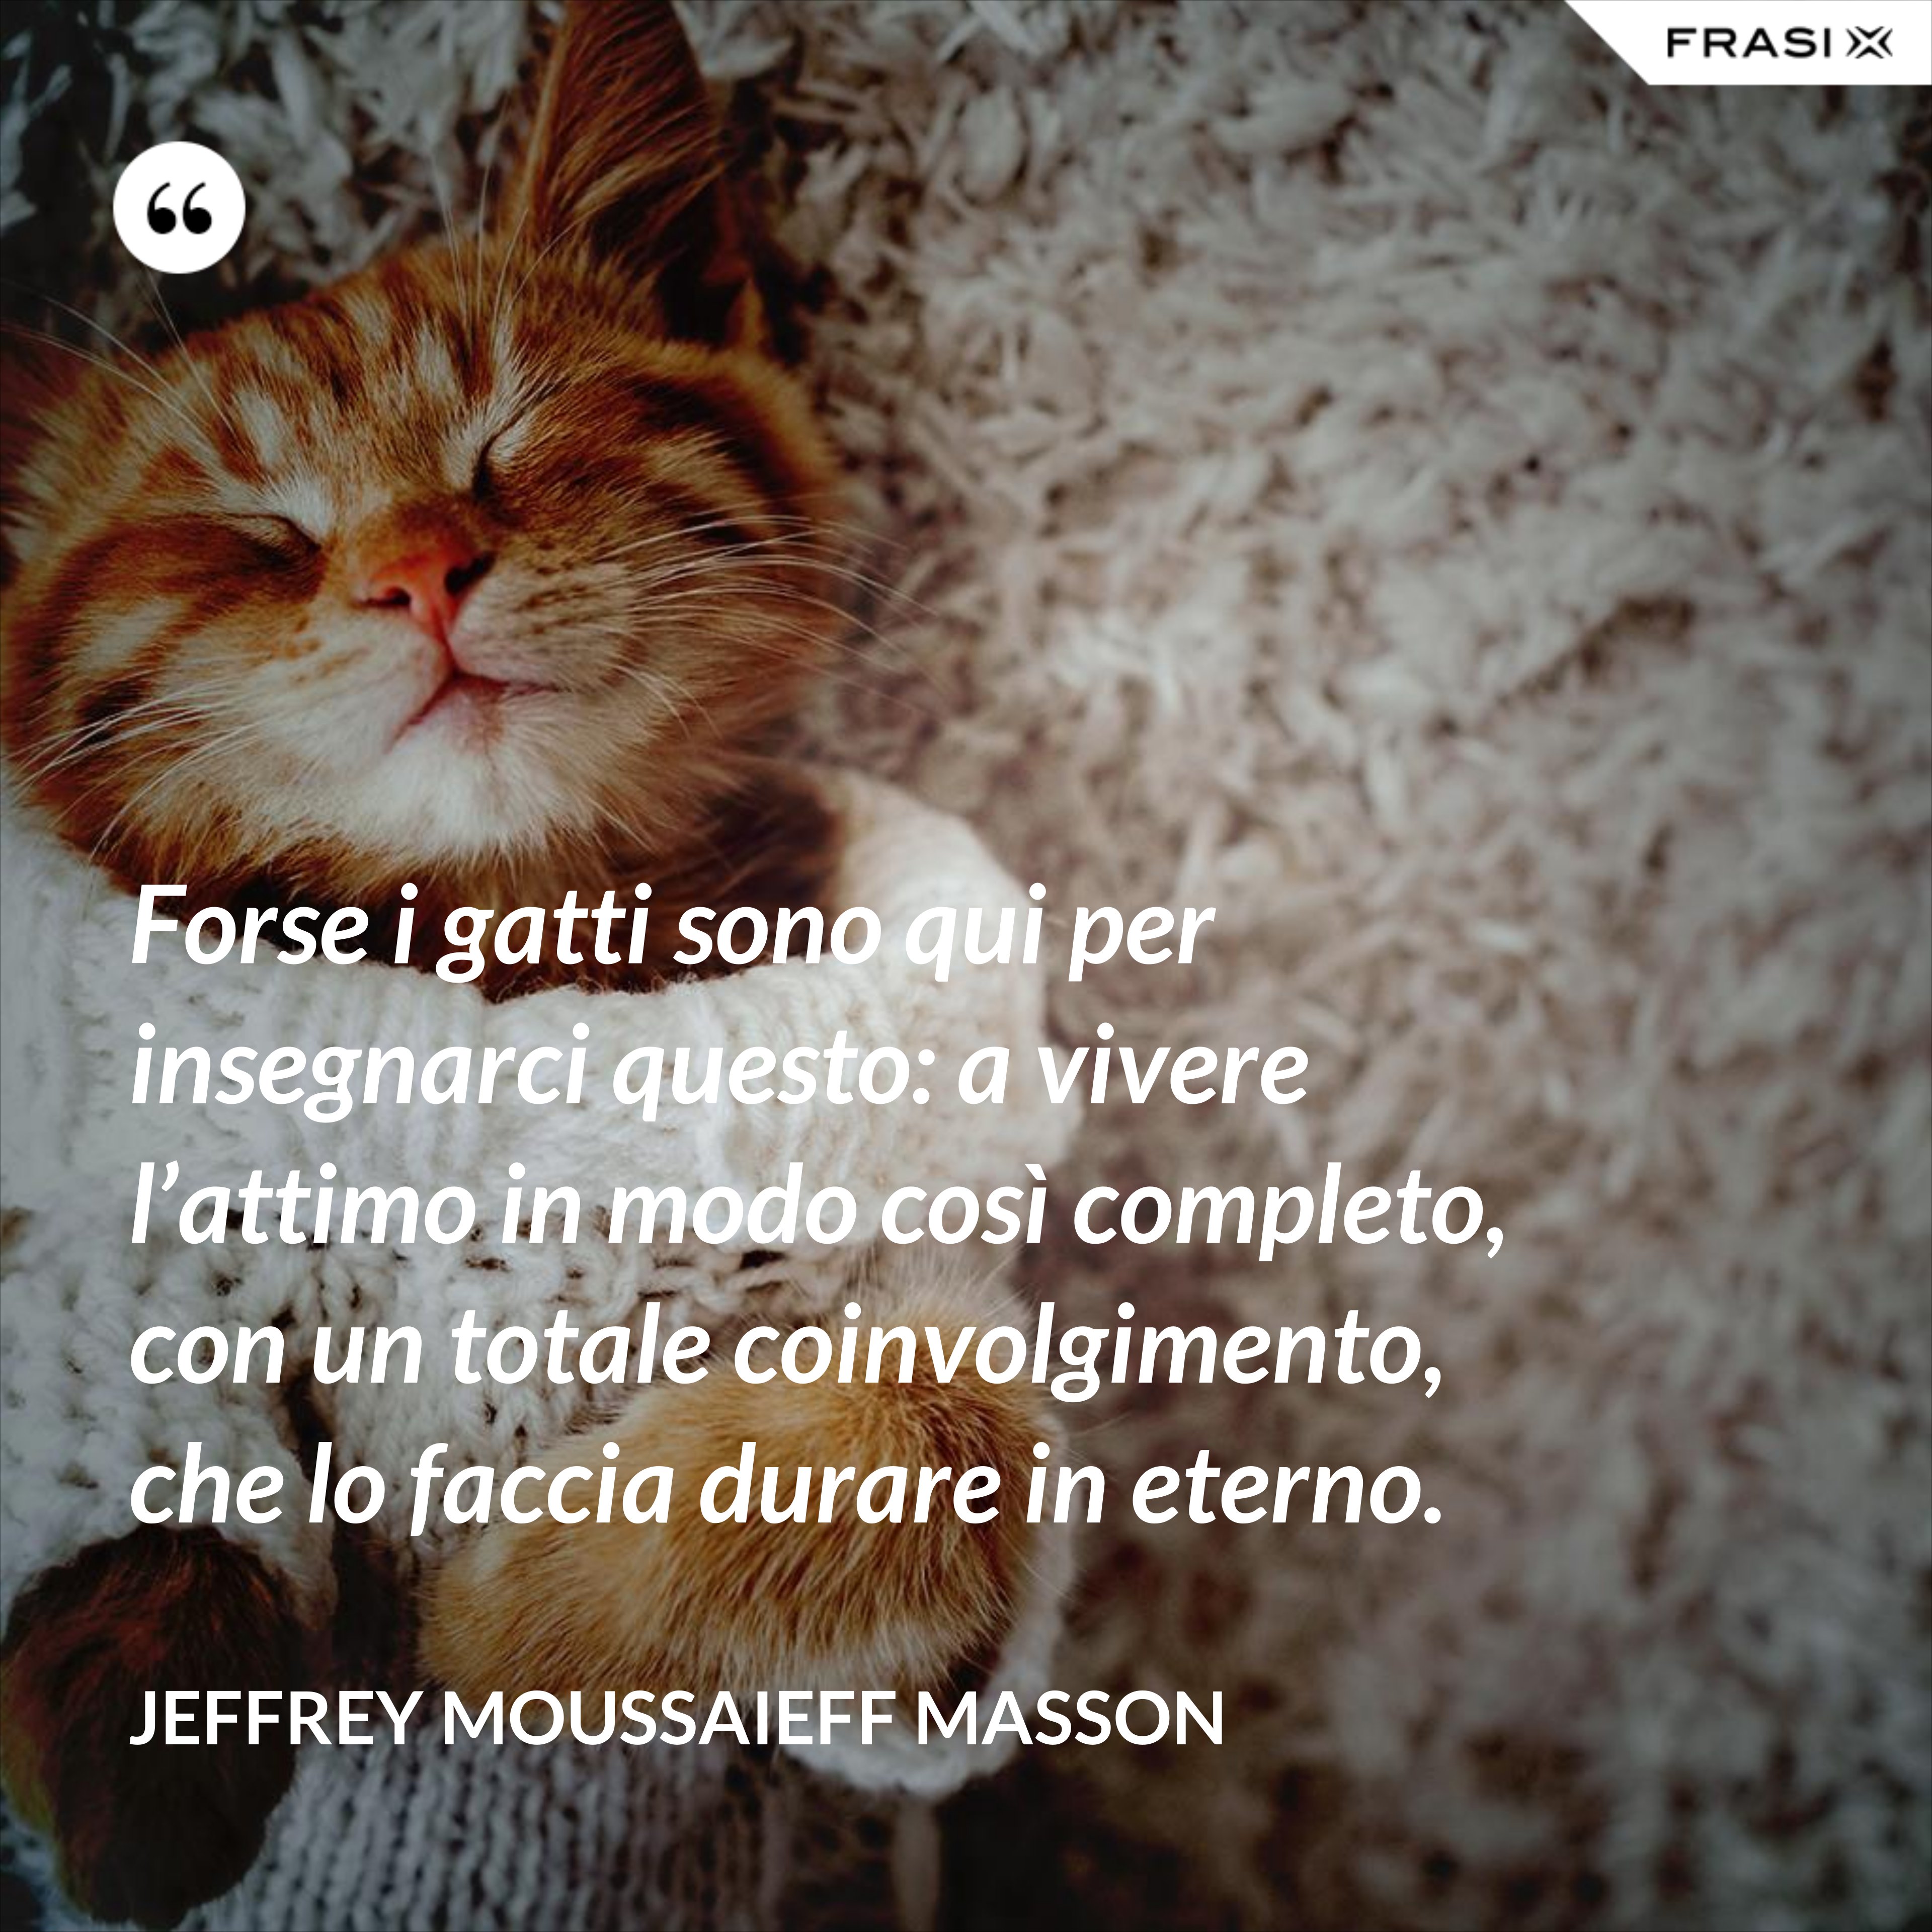 Forse i gatti sono qui per insegnarci questo: a vivere l’attimo in modo così completo, con un totale coinvolgimento, che lo faccia durare in eterno. - Jeffrey Moussaieff Masson